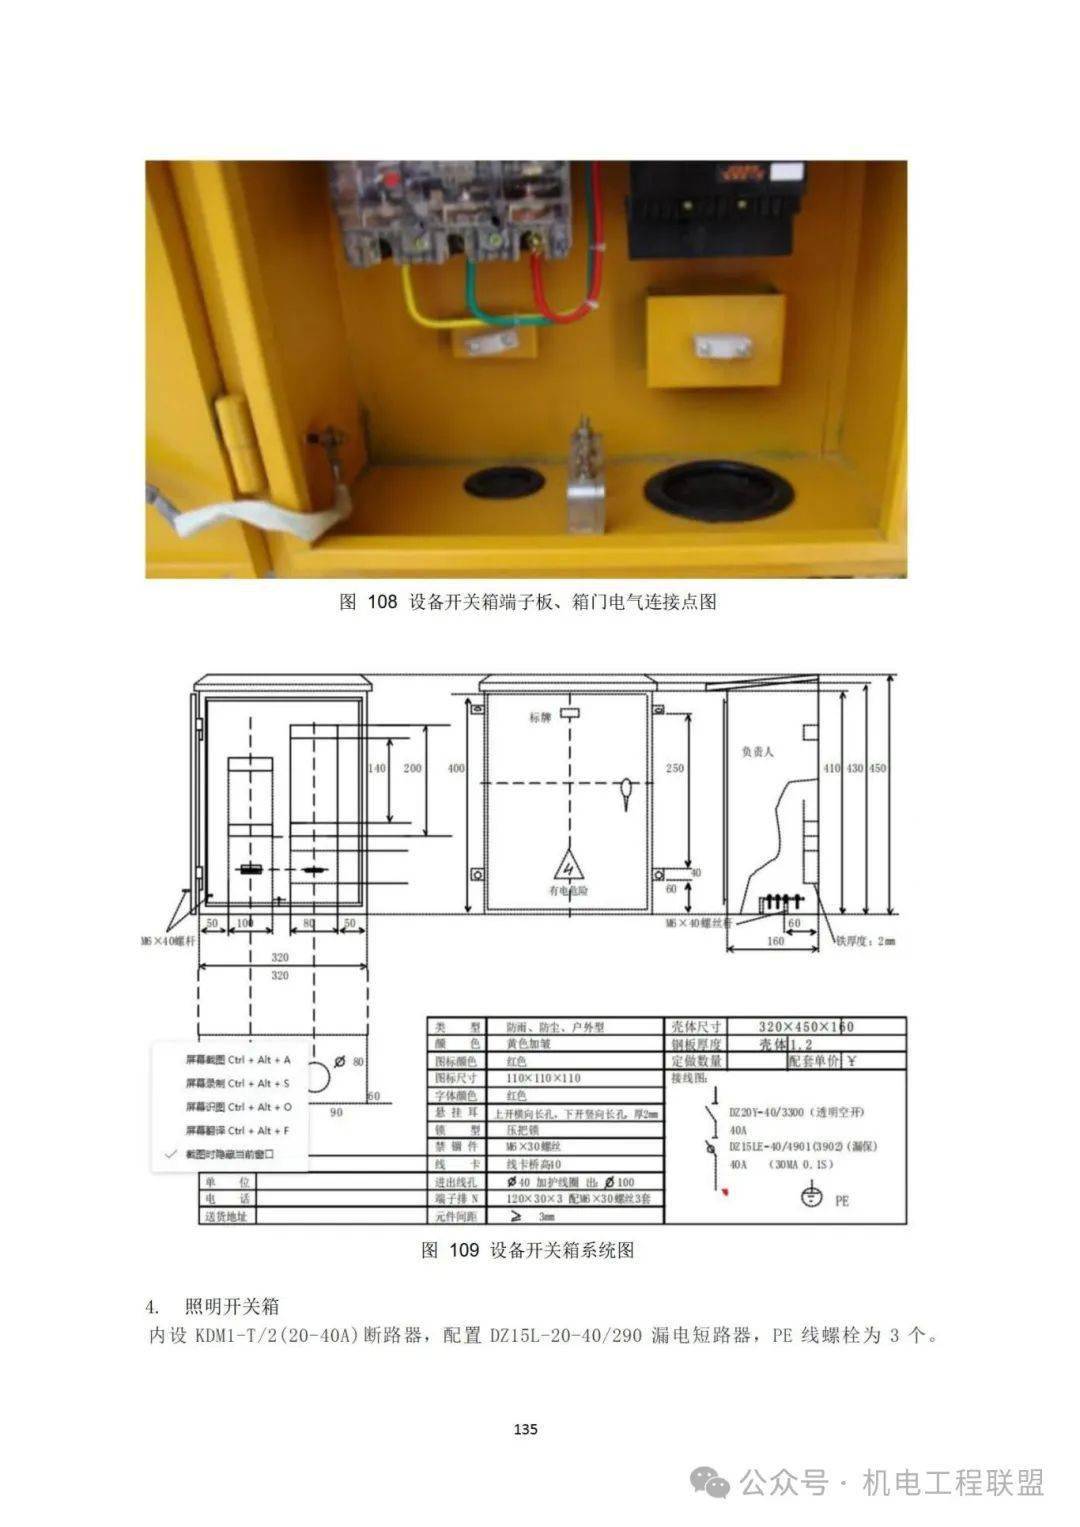 一级电箱的配置标准图图片